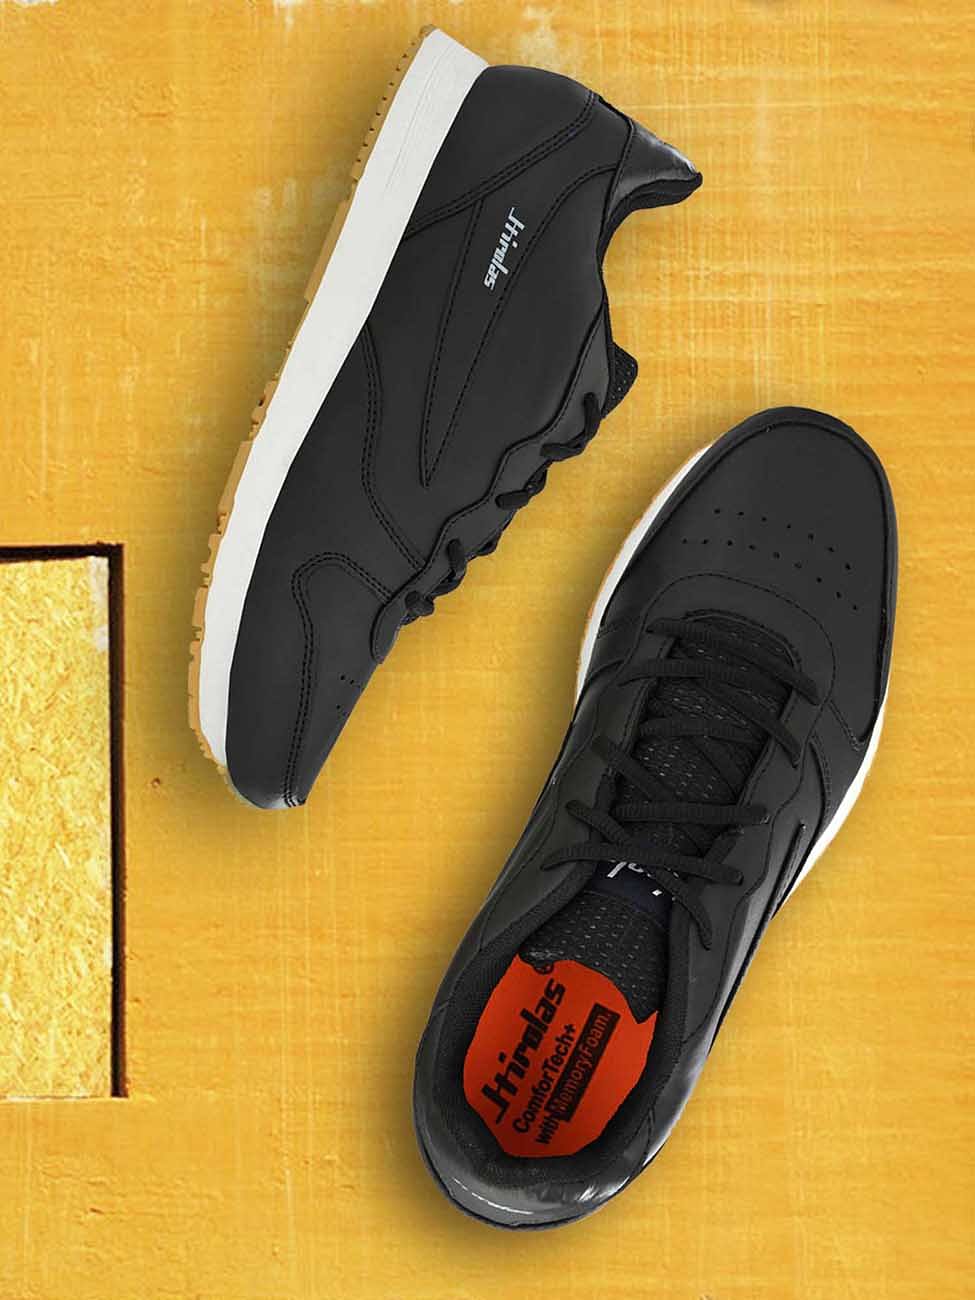 Pair-it Men's Sports Shoes - Black-LZ-SPORTS020